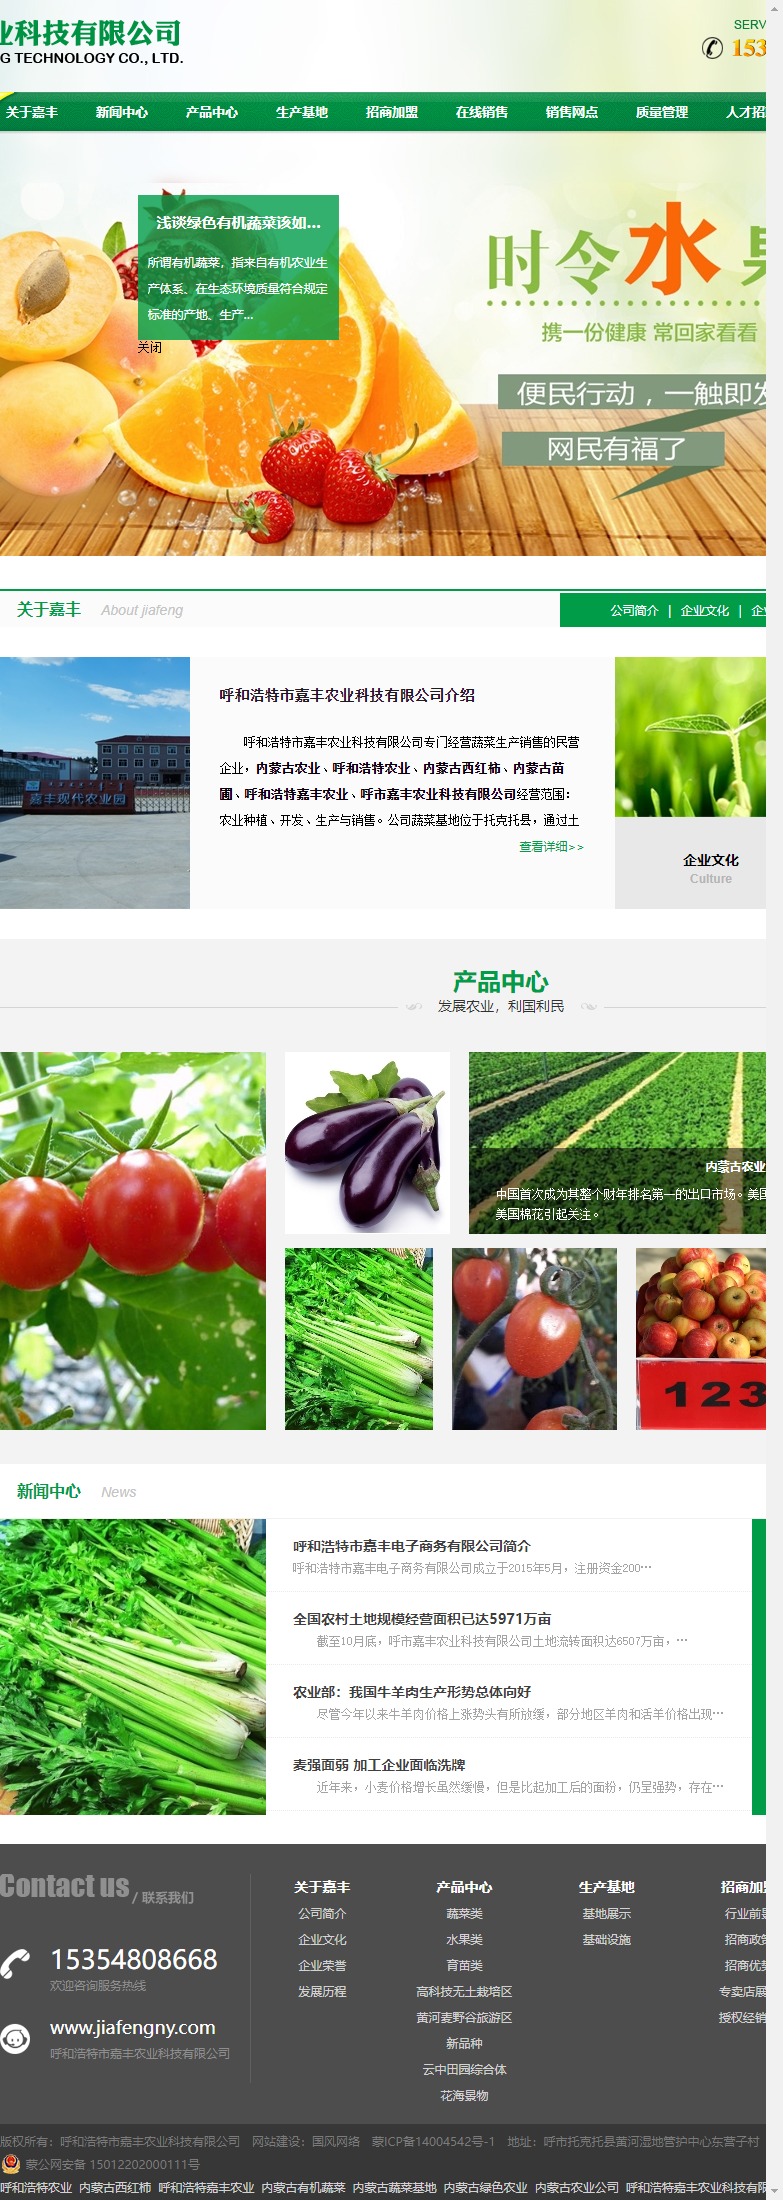 呼和浩特市嘉丰农业科技有限公司网站案例